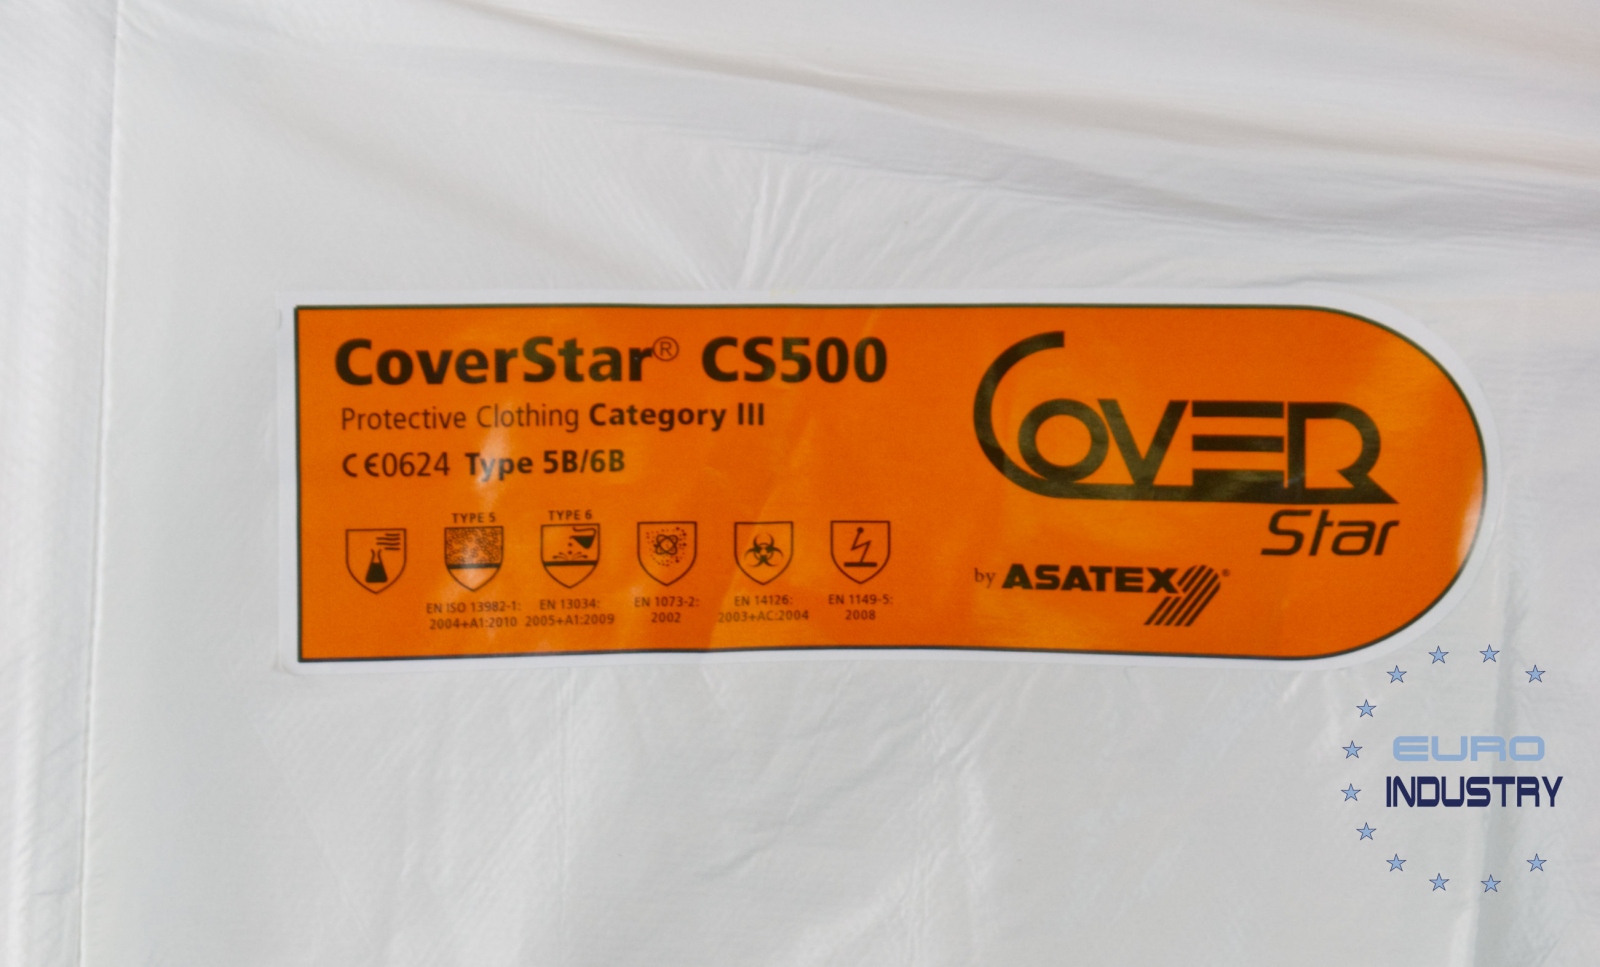 pics/Coverstar/coverstar-cs500-antivirus-chemical-protection-details.jpg